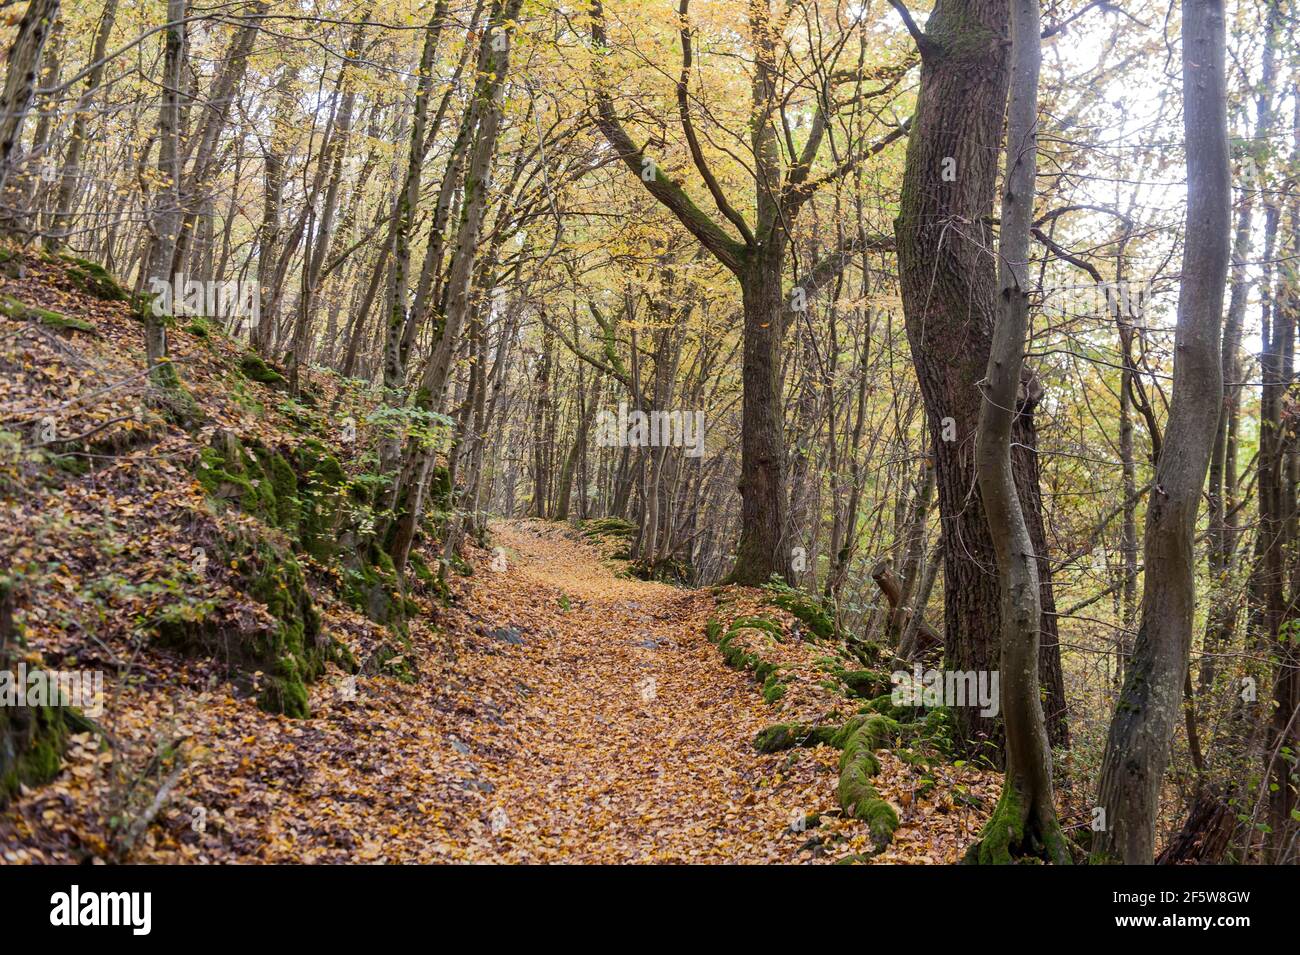 Moquette gialla di foglie su sentiero escursionistico, colorazione fogliame, bosco di carpino-quercia (Carpinus betulus) in autunno, quercia sessile (Quercus petraea) e. Foto Stock